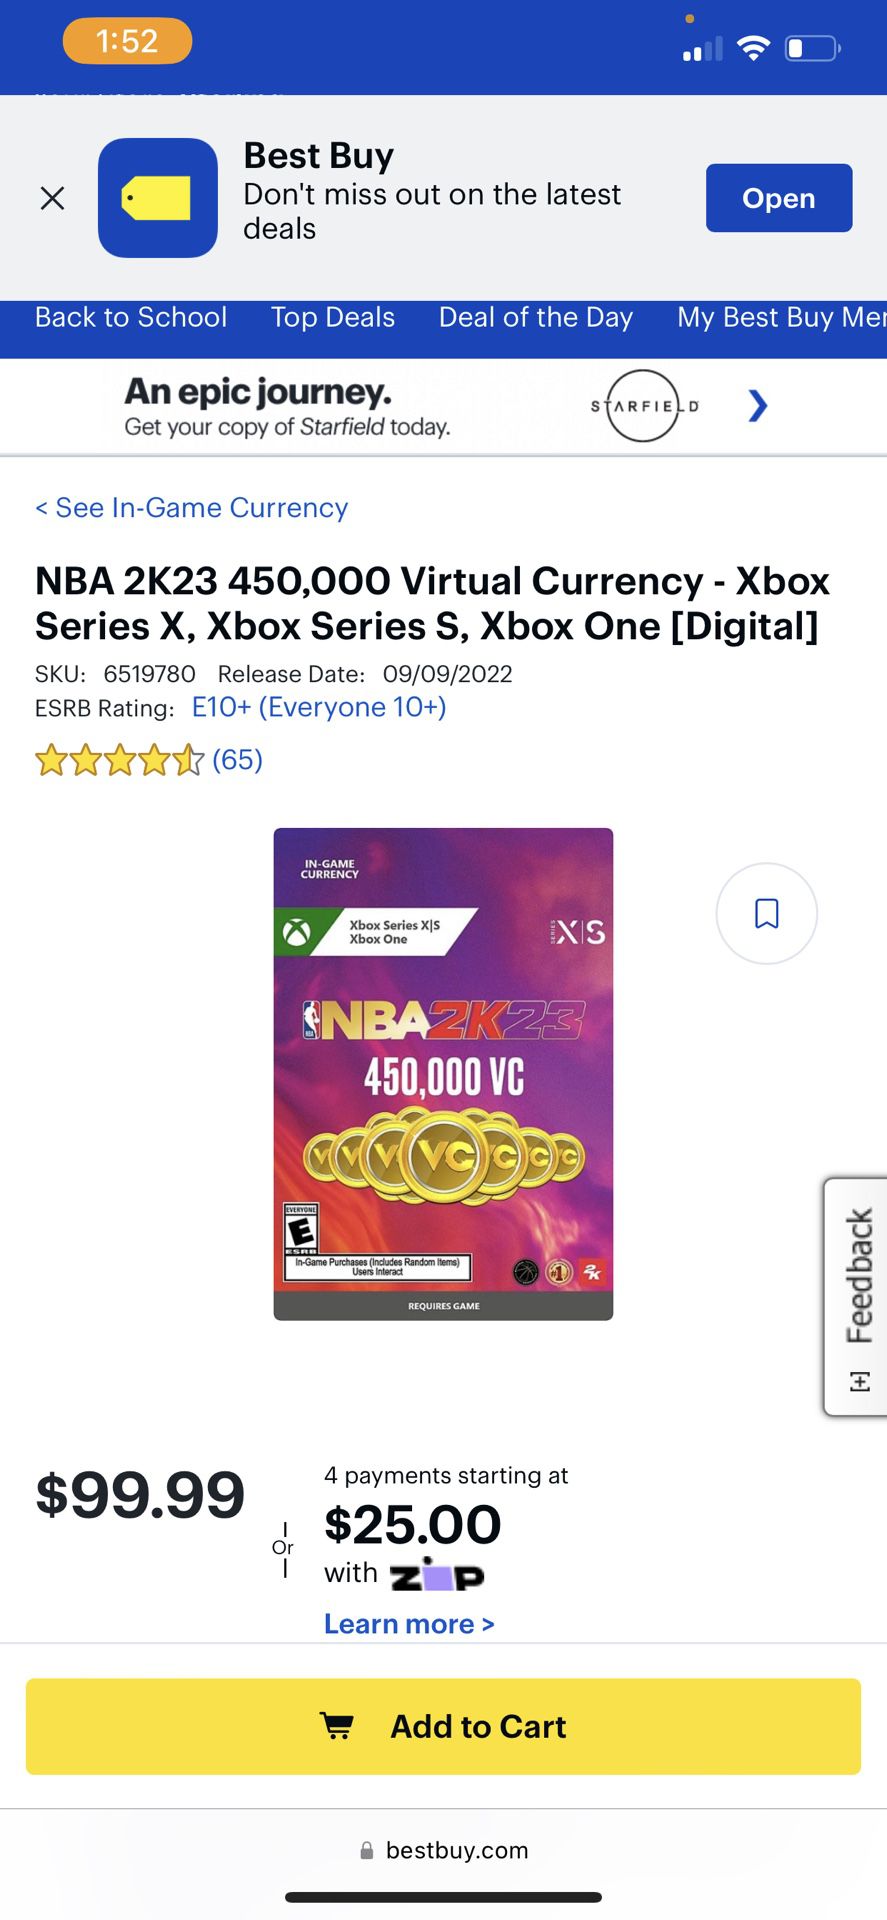 NBA 2k23 450,000 VC